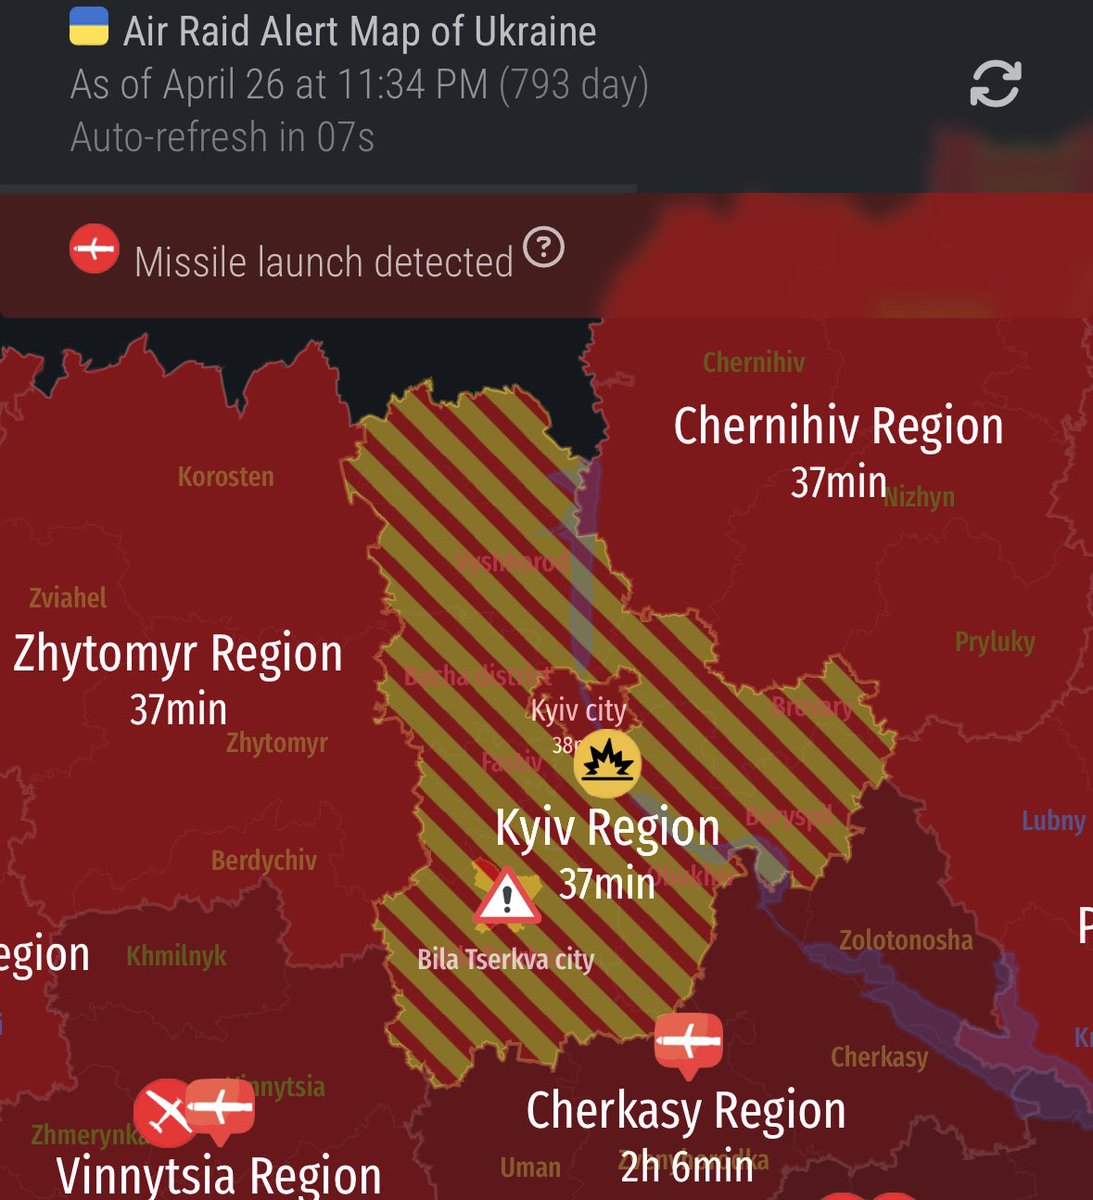 Ukraine under attack